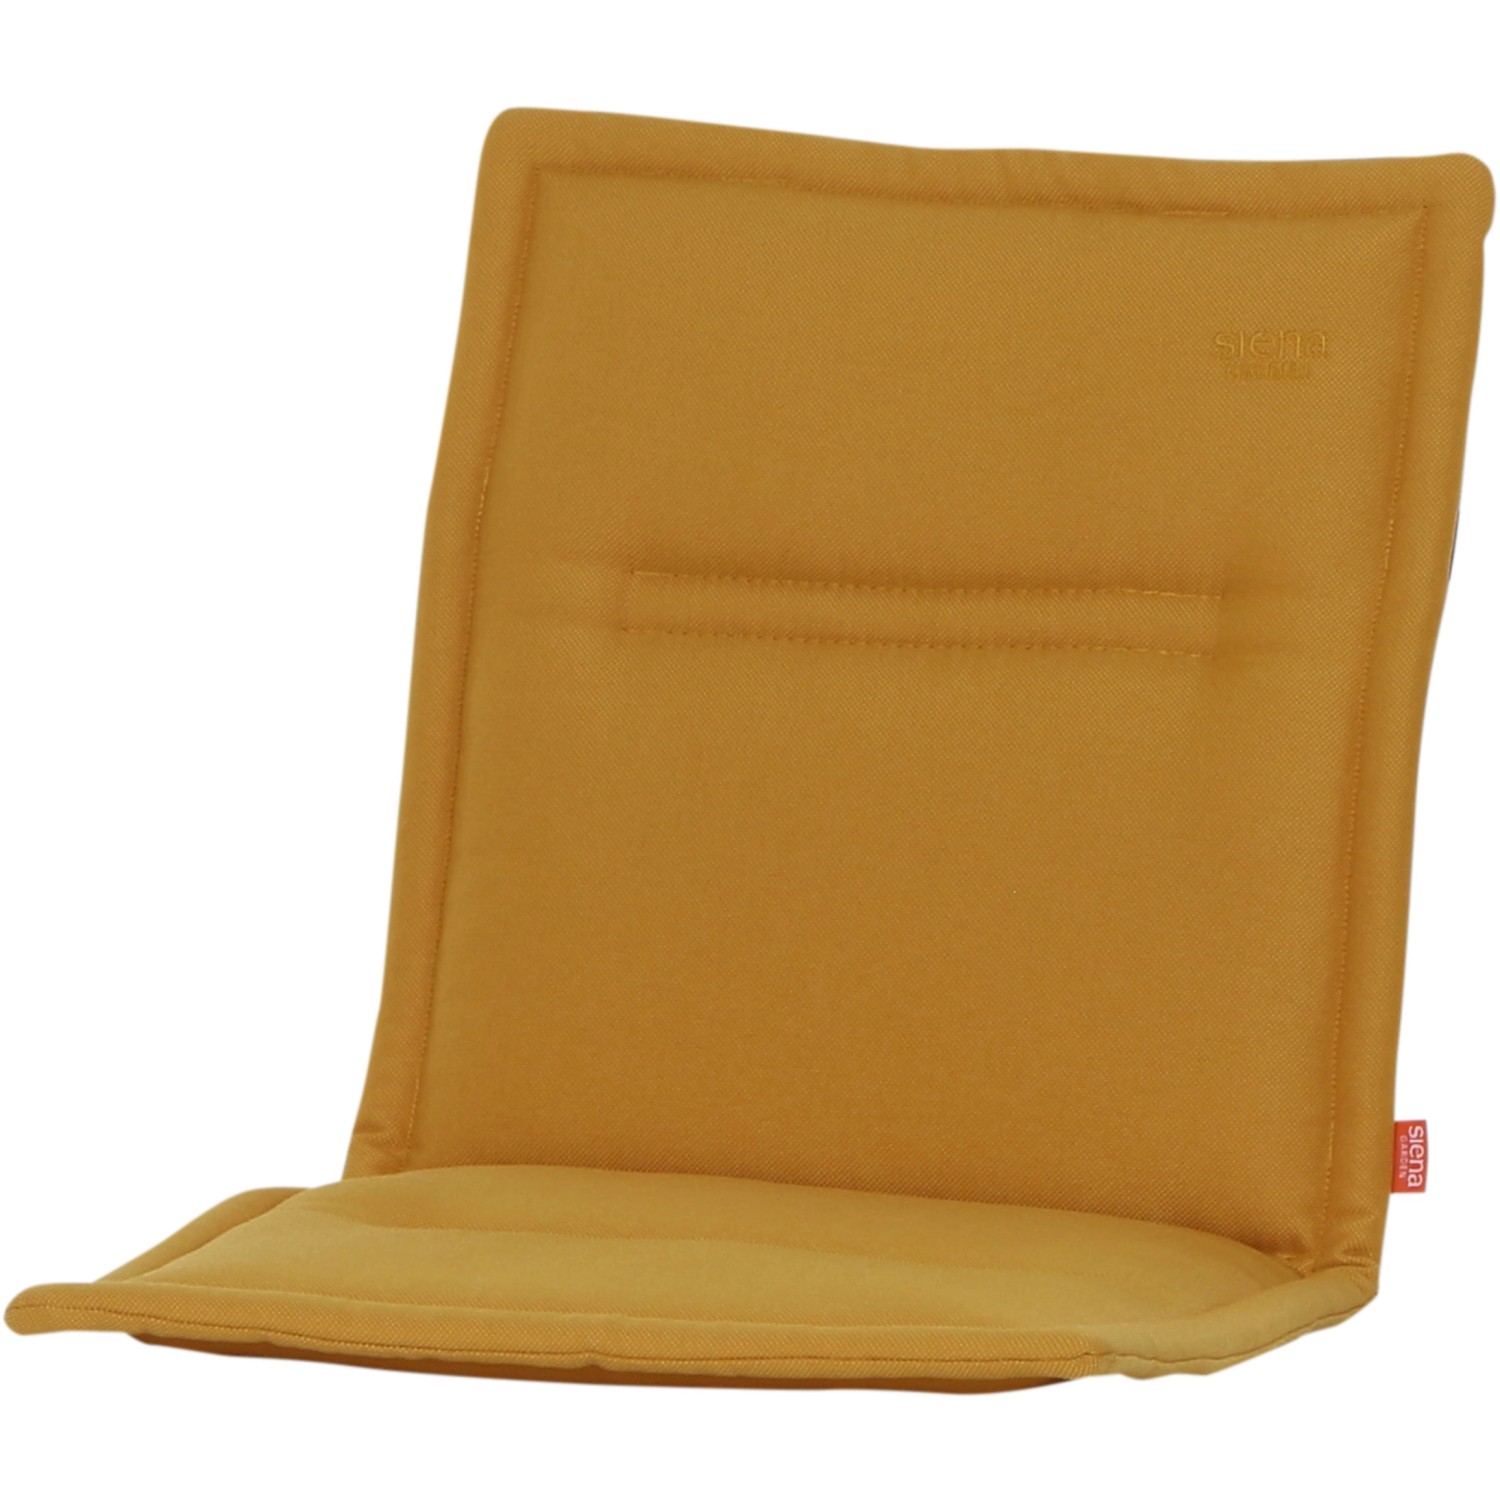 Siena Garden Sesselauflage Musica 96 cm x 46 cm x 3 cm Gelb kaufen bei OBI